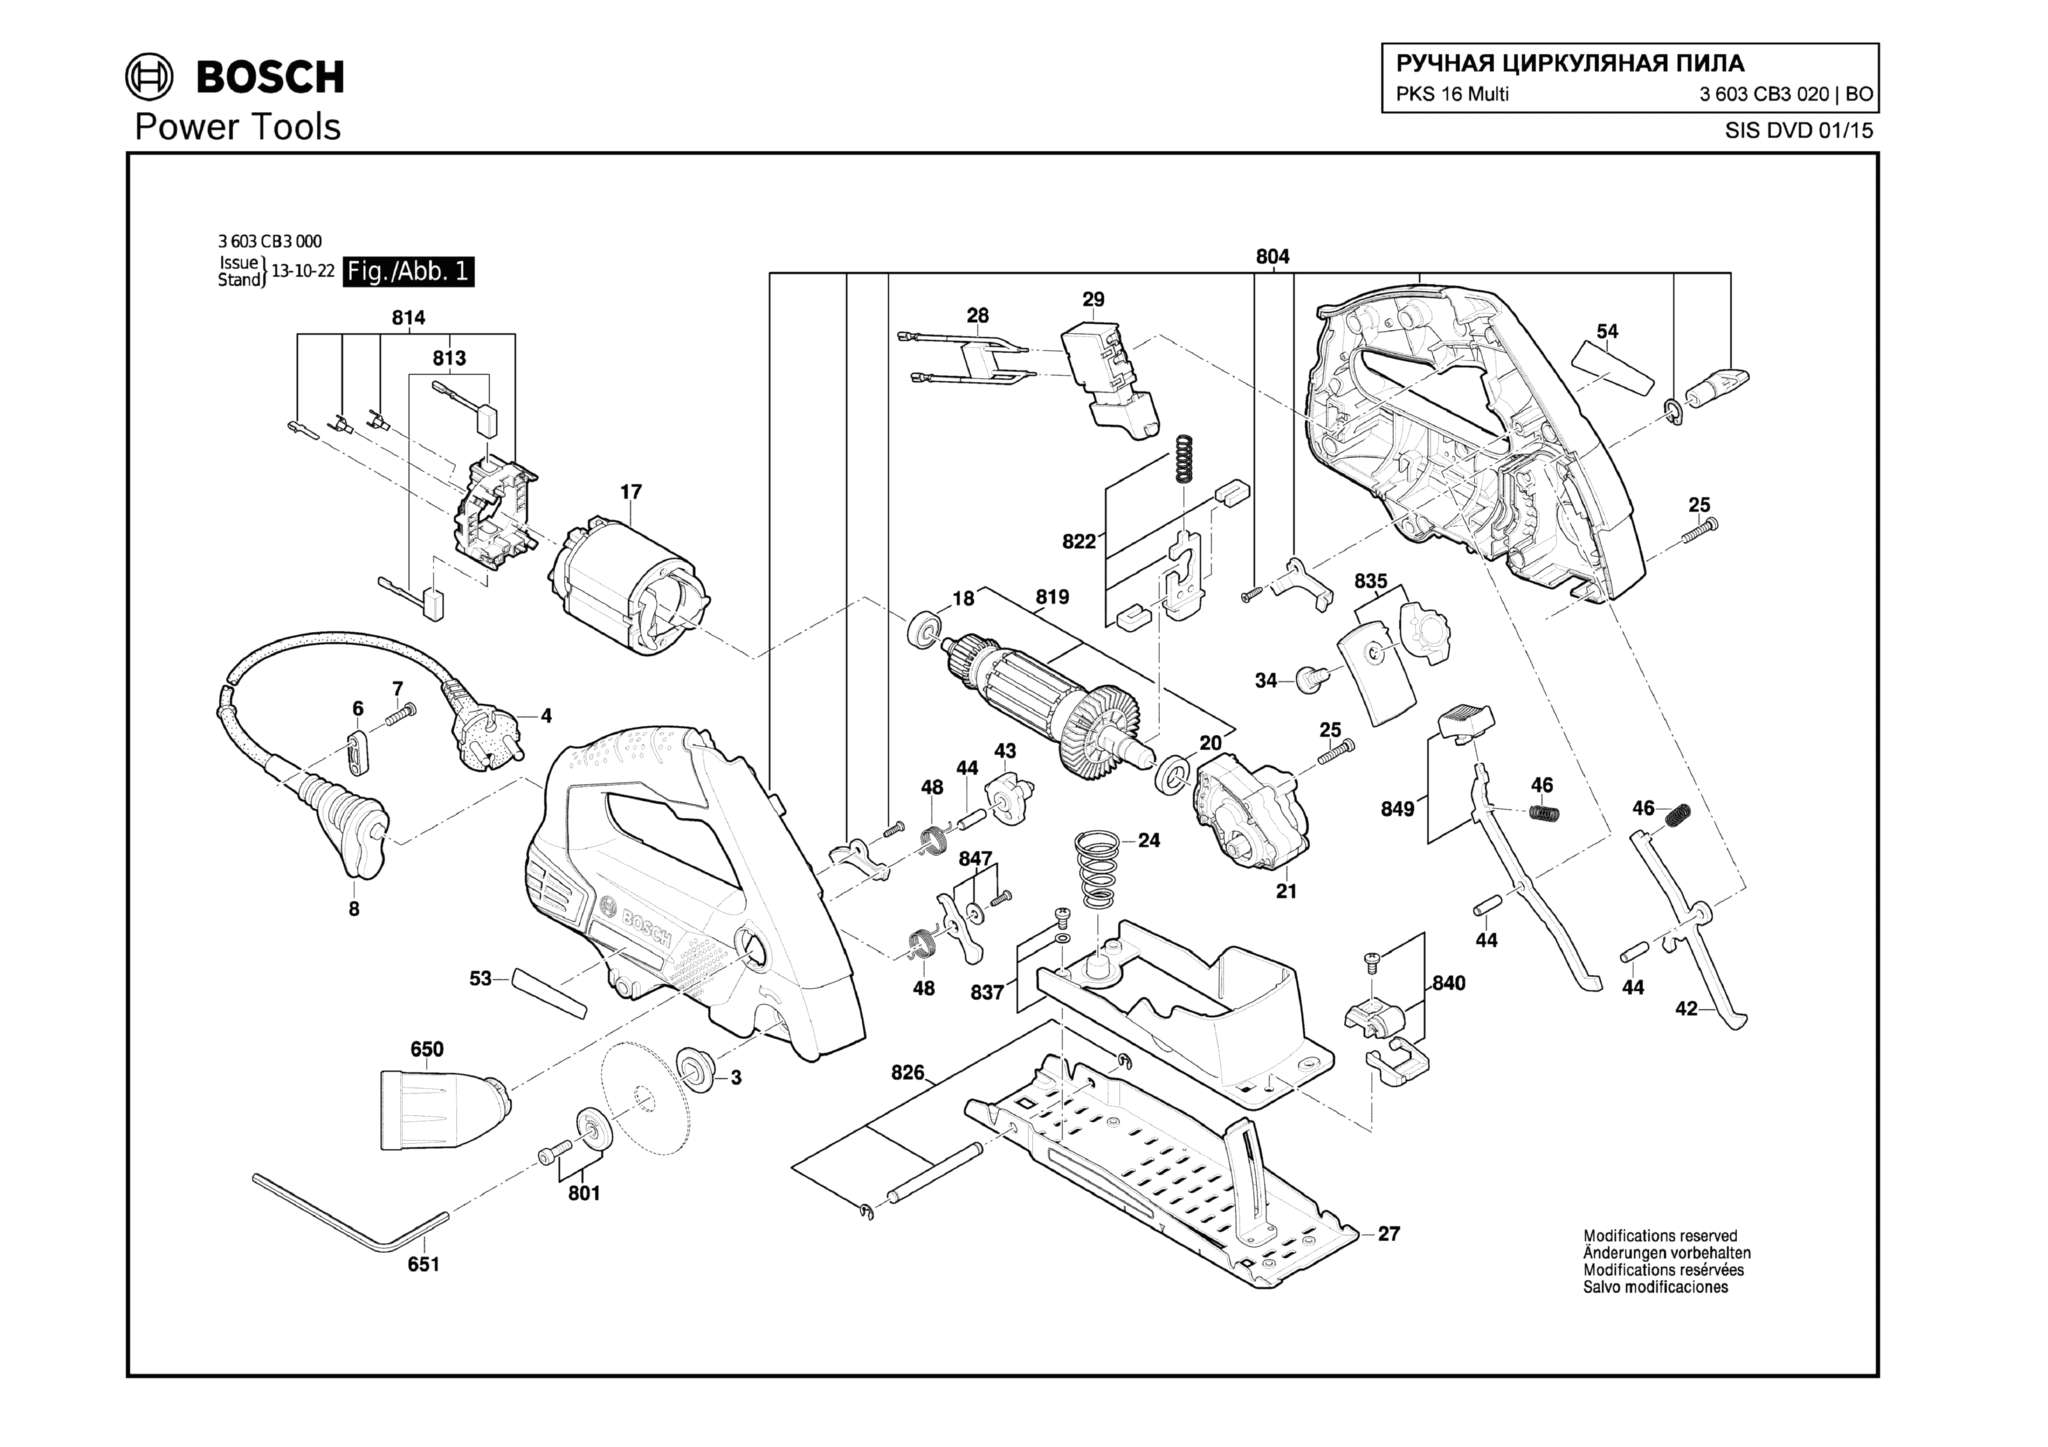 Запчасти, схема и деталировка Bosch PKS 16 MULTI (ТИП 3603CB3020)